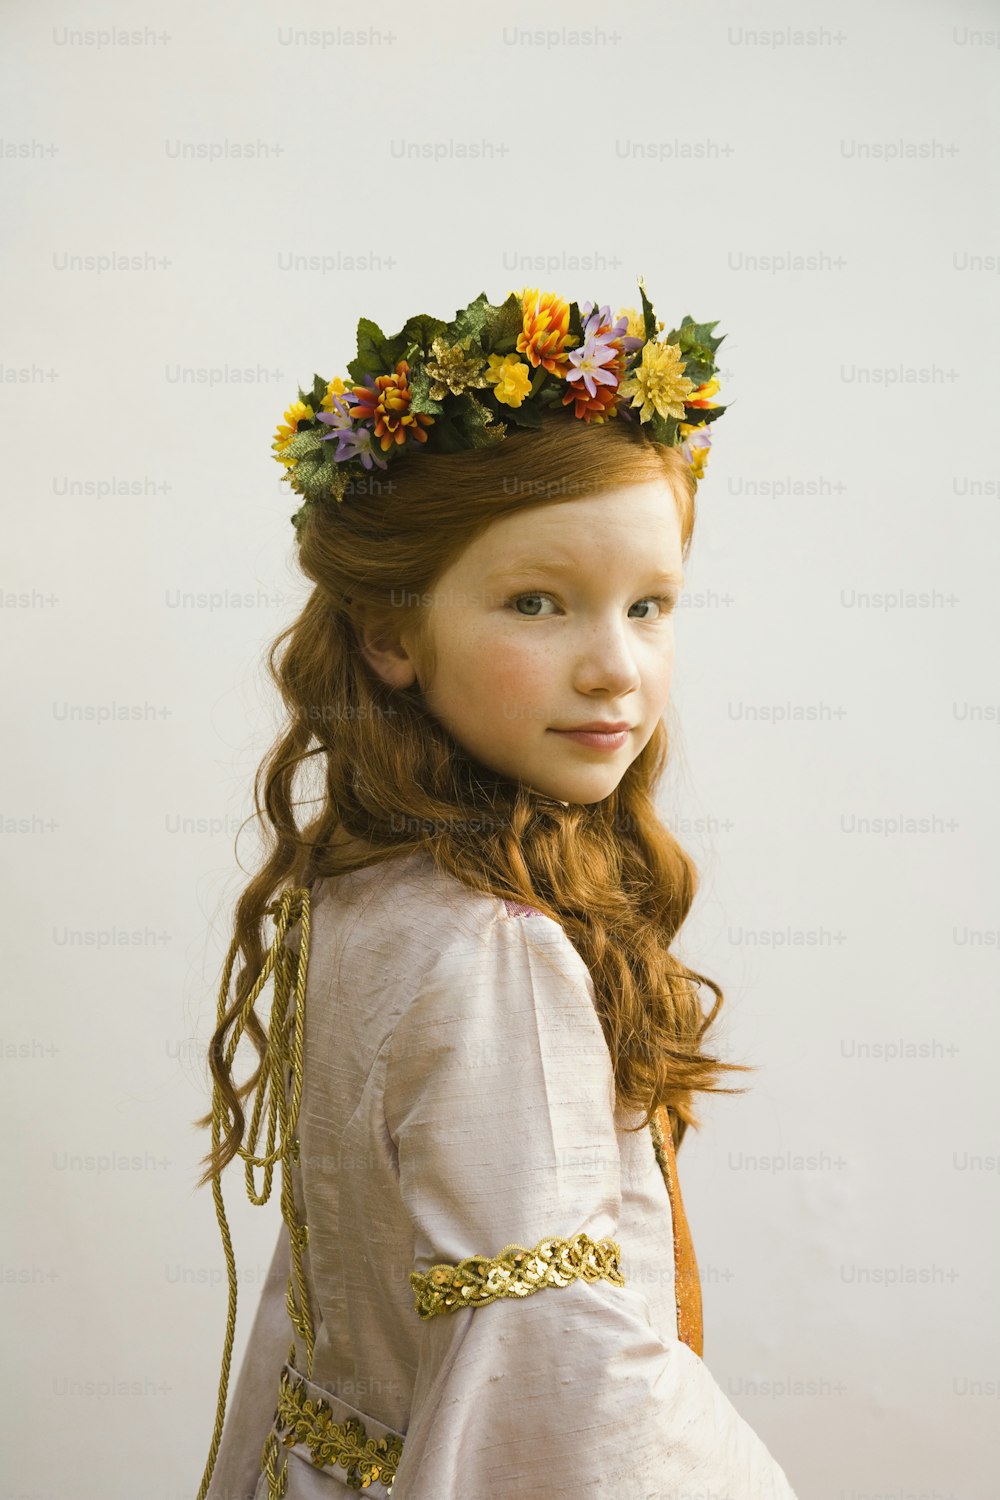 Ein kleines Mädchen mit einer Blumenkrone auf dem Kopf